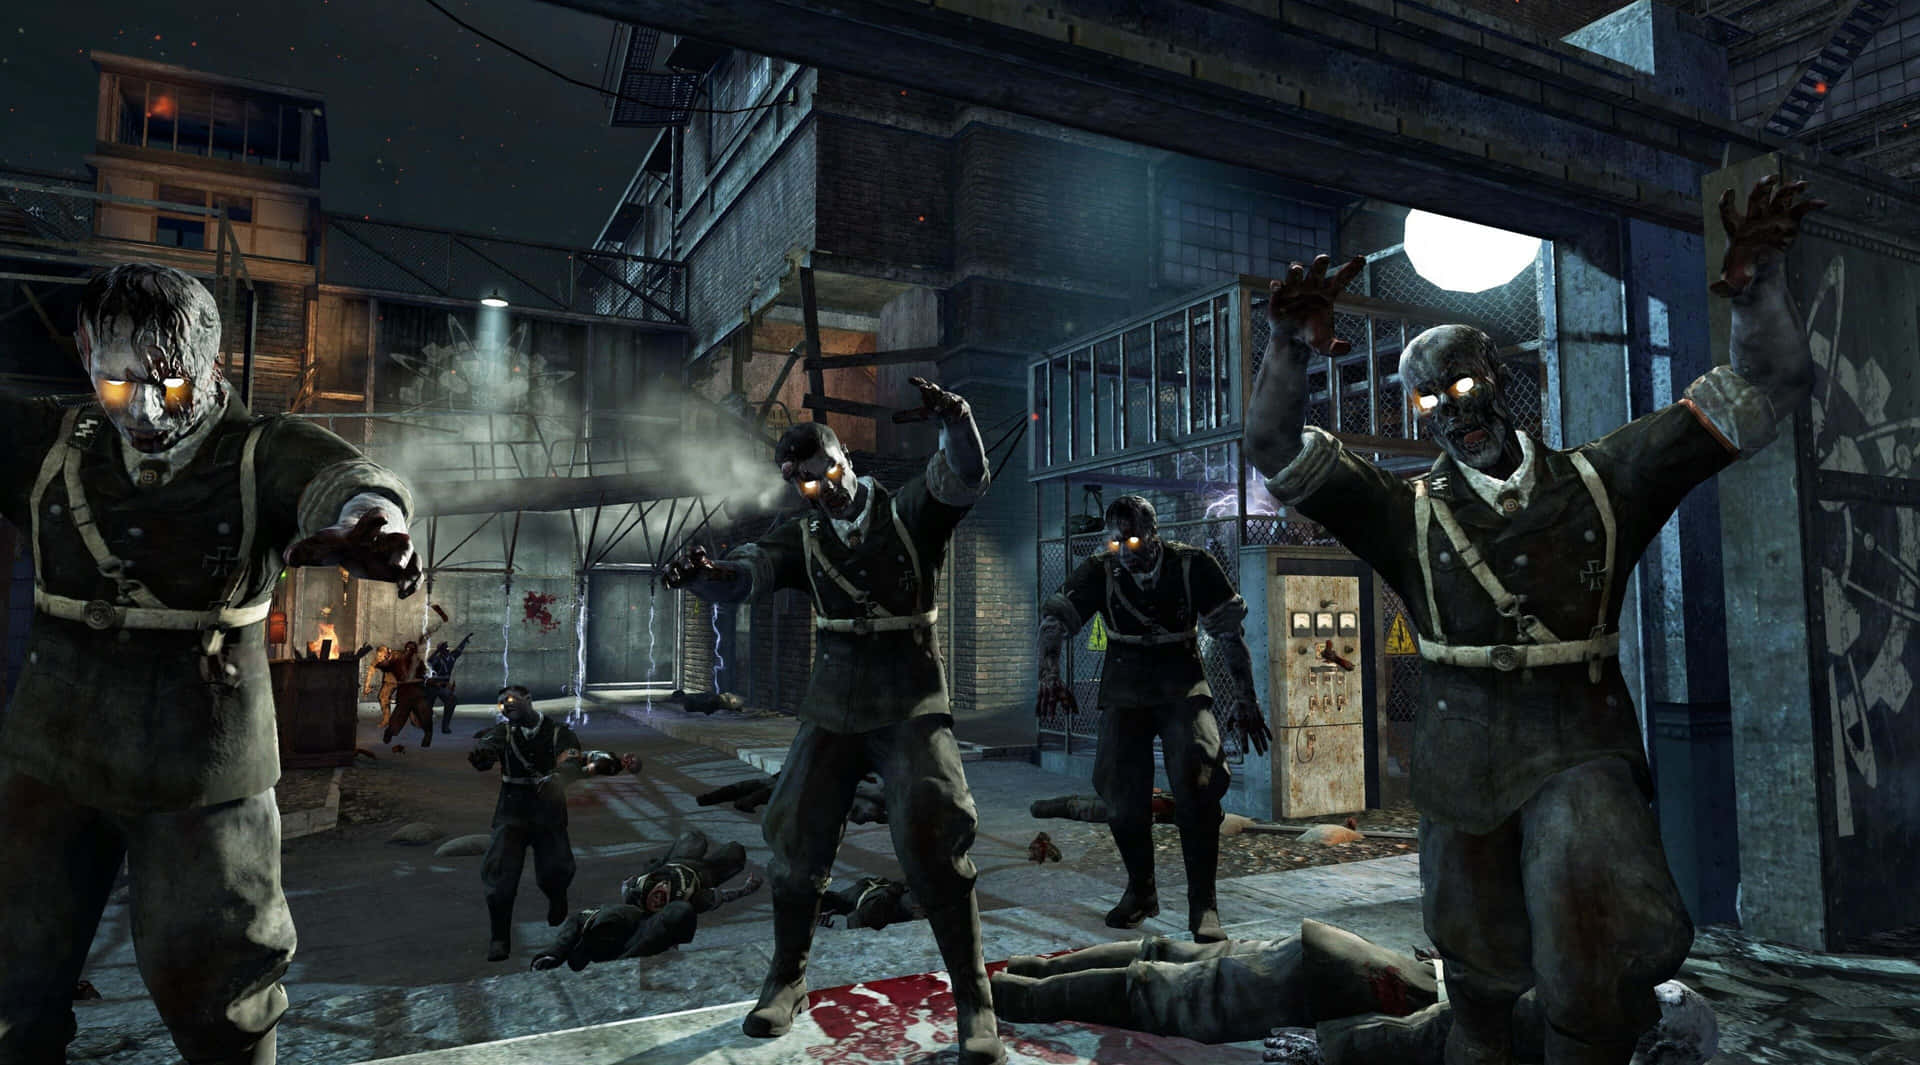 Kriger Bare Endnu Et Spil - Call Of Duty Black Ops 1 Wallpaper